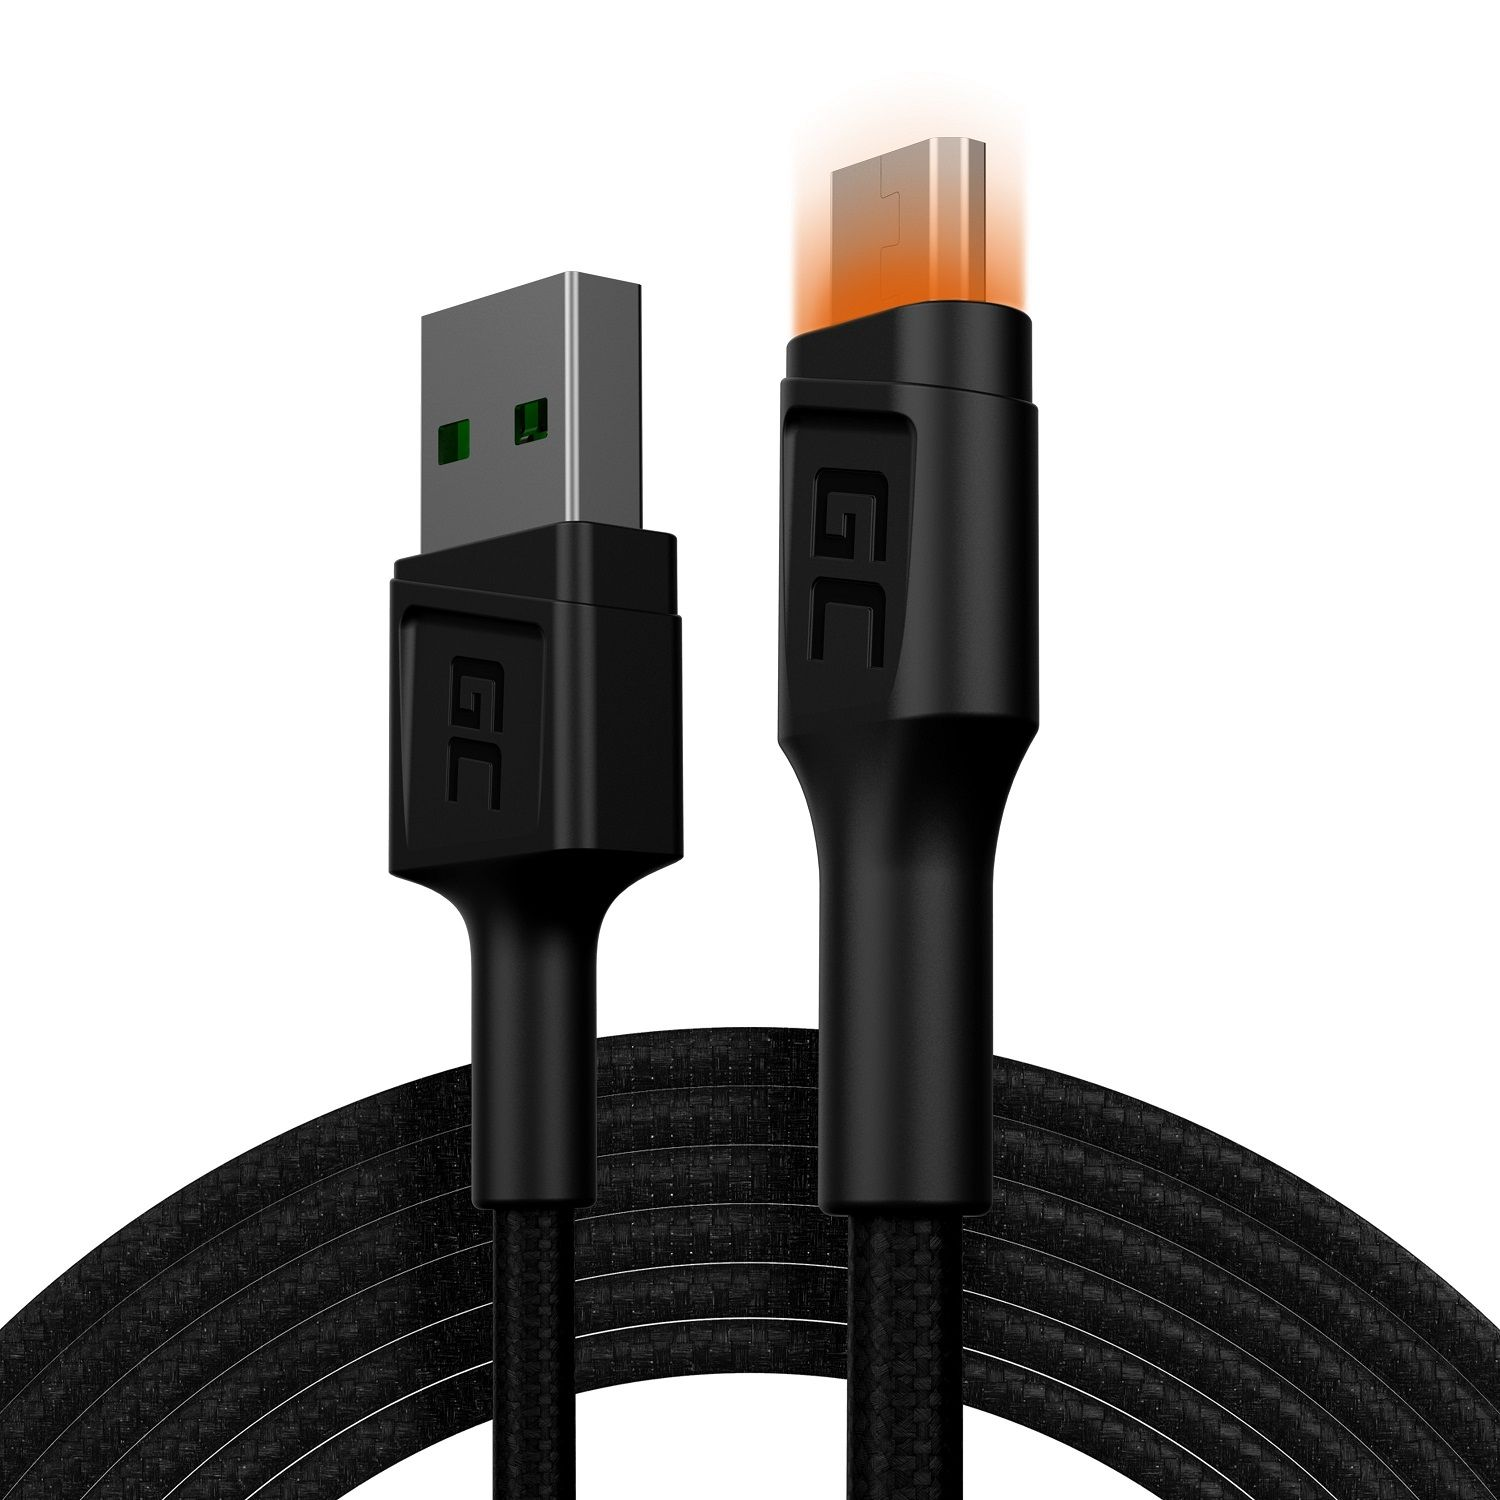 und CELL Adapter (PC), - m 2 schwarz GREEN microUSB-Kabel USB-A Kabel Zubehör